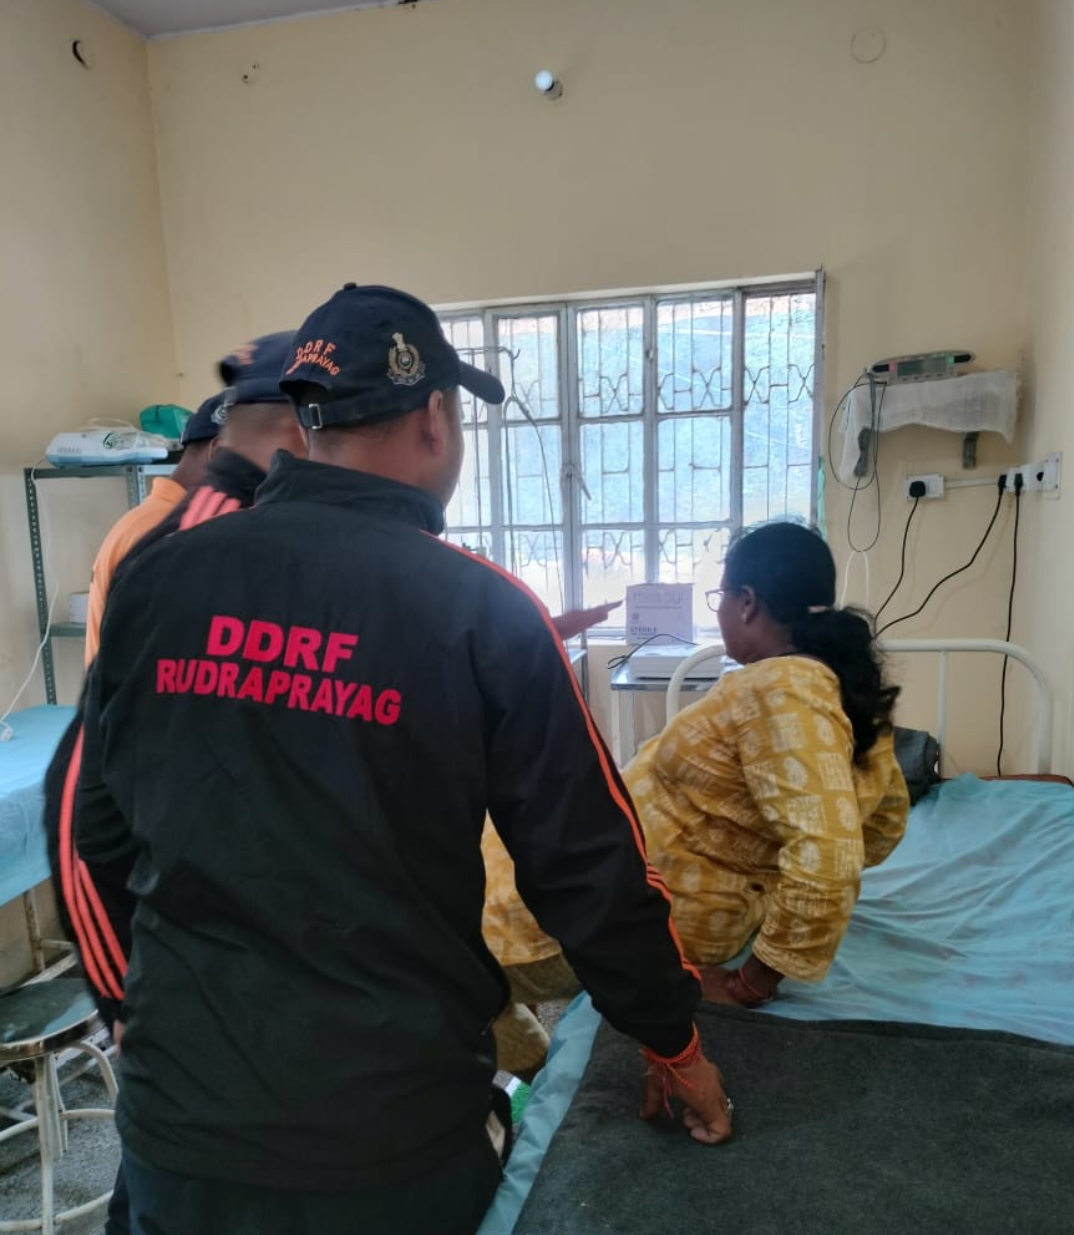 घायल महिला को गौरीकुंड स्थित स्वास्थ्य केन्द्र में भती कराते डीडीआरएफ के जवान।